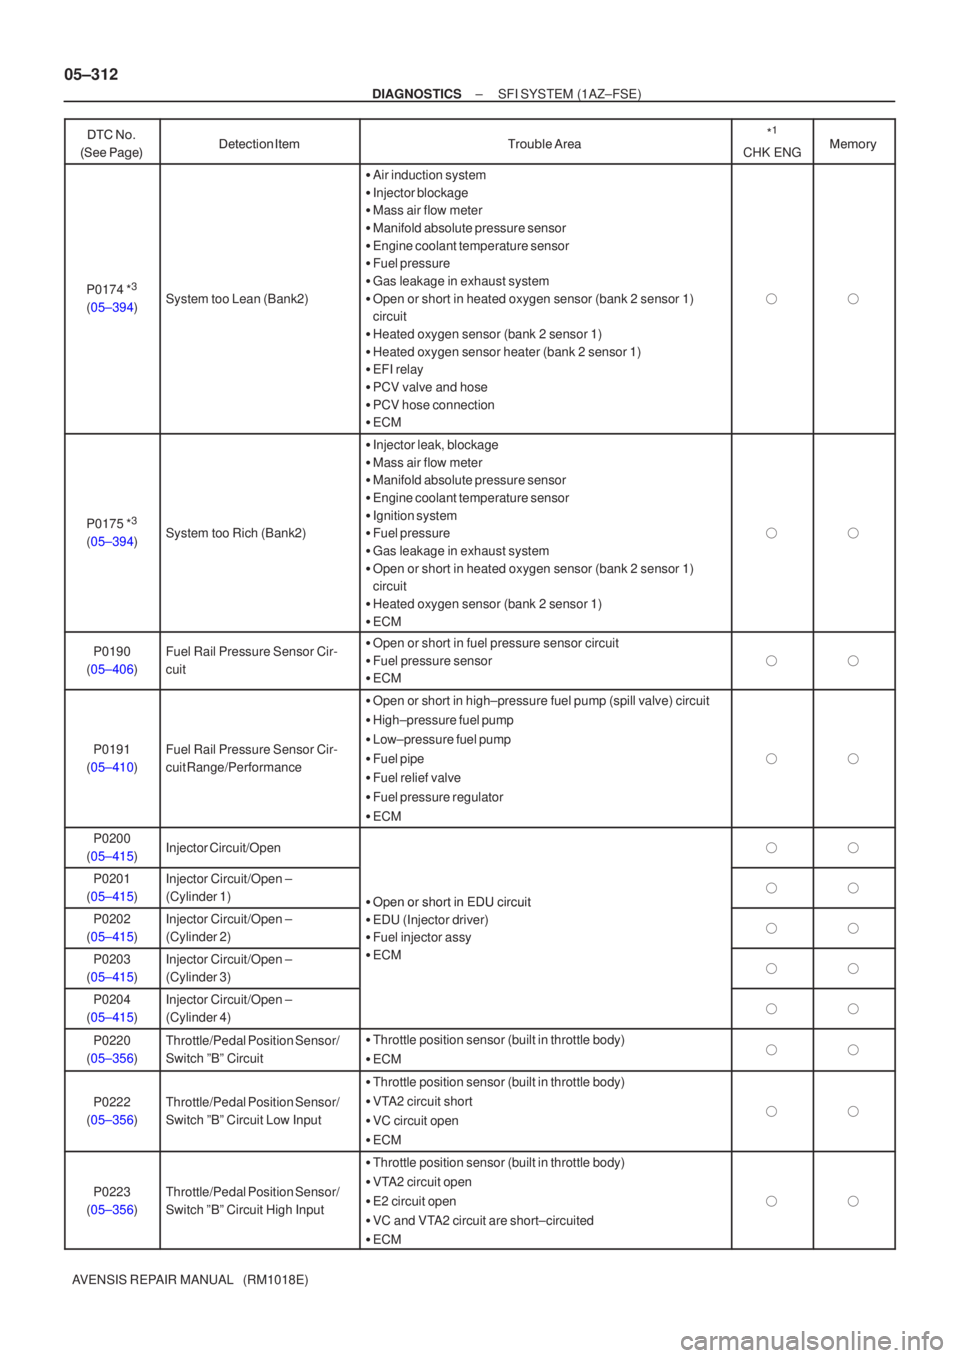 TOYOTA AVENSIS 2005  Service User Guide 05±312
±
DIAGNOSTICS SFI SYSTEM (1AZ±FSE)
AVENSIS REPAIR MANUAL   (RM1018E) 
 

\f  	
*
1
CHK ENG

 
 \b
P0174 *3
(05±394)System too Lean (Bank2)
 Air induc